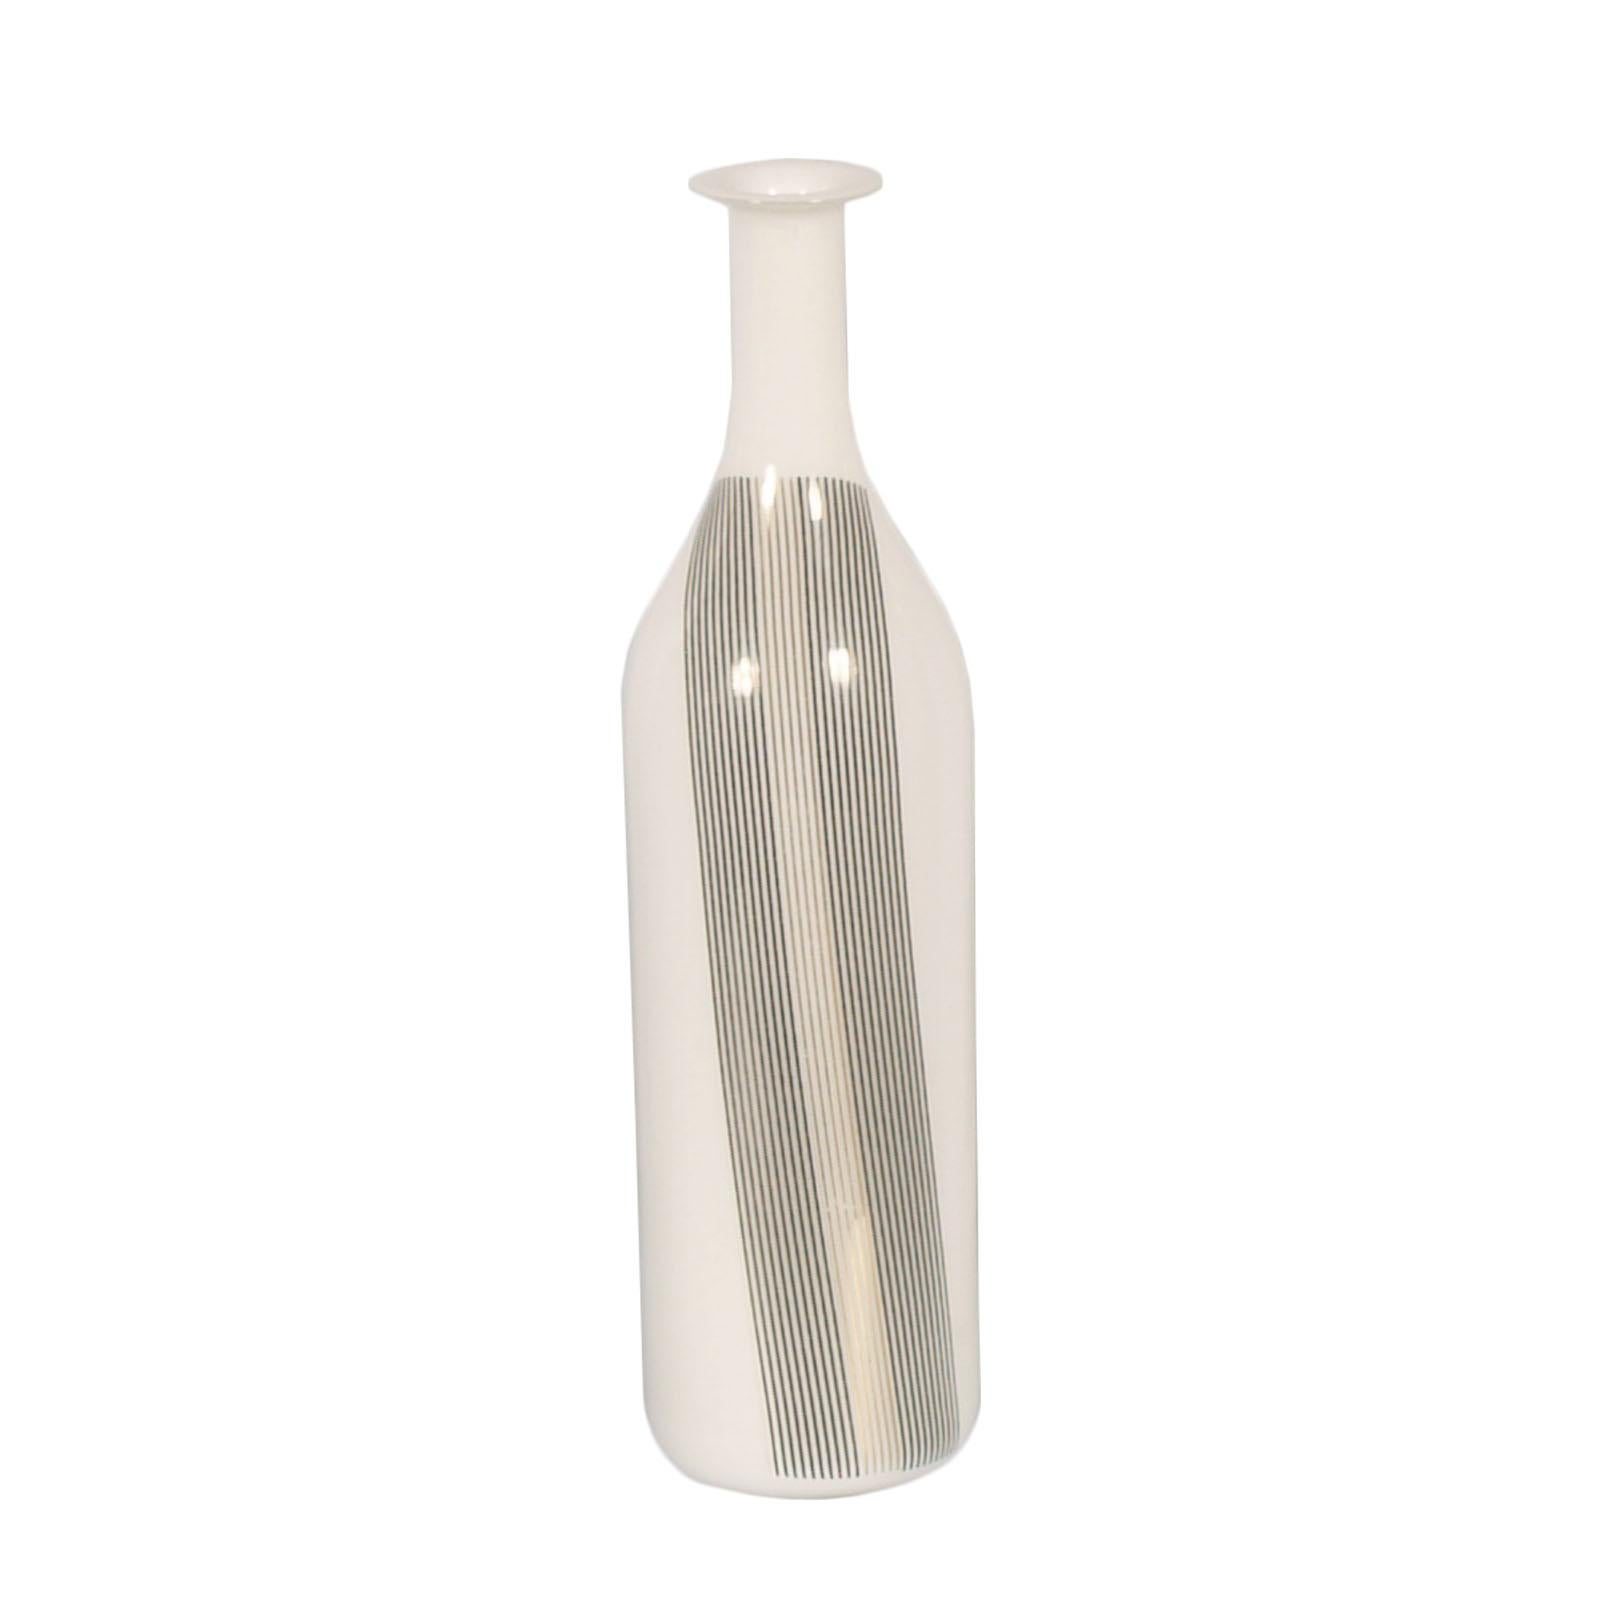 Sie können separat verkauft werden
Mitte des Jahrhunderts Satz von zwei Vasen Tapio Wirkkala für Venini in geblasenem Lattimio Murano-Glas zuzuschreiben. 

Über Tapio Wirkkala:
Diese 1968 von Tapio Wirkkala entworfenen Flaschen bestehen aus sanft